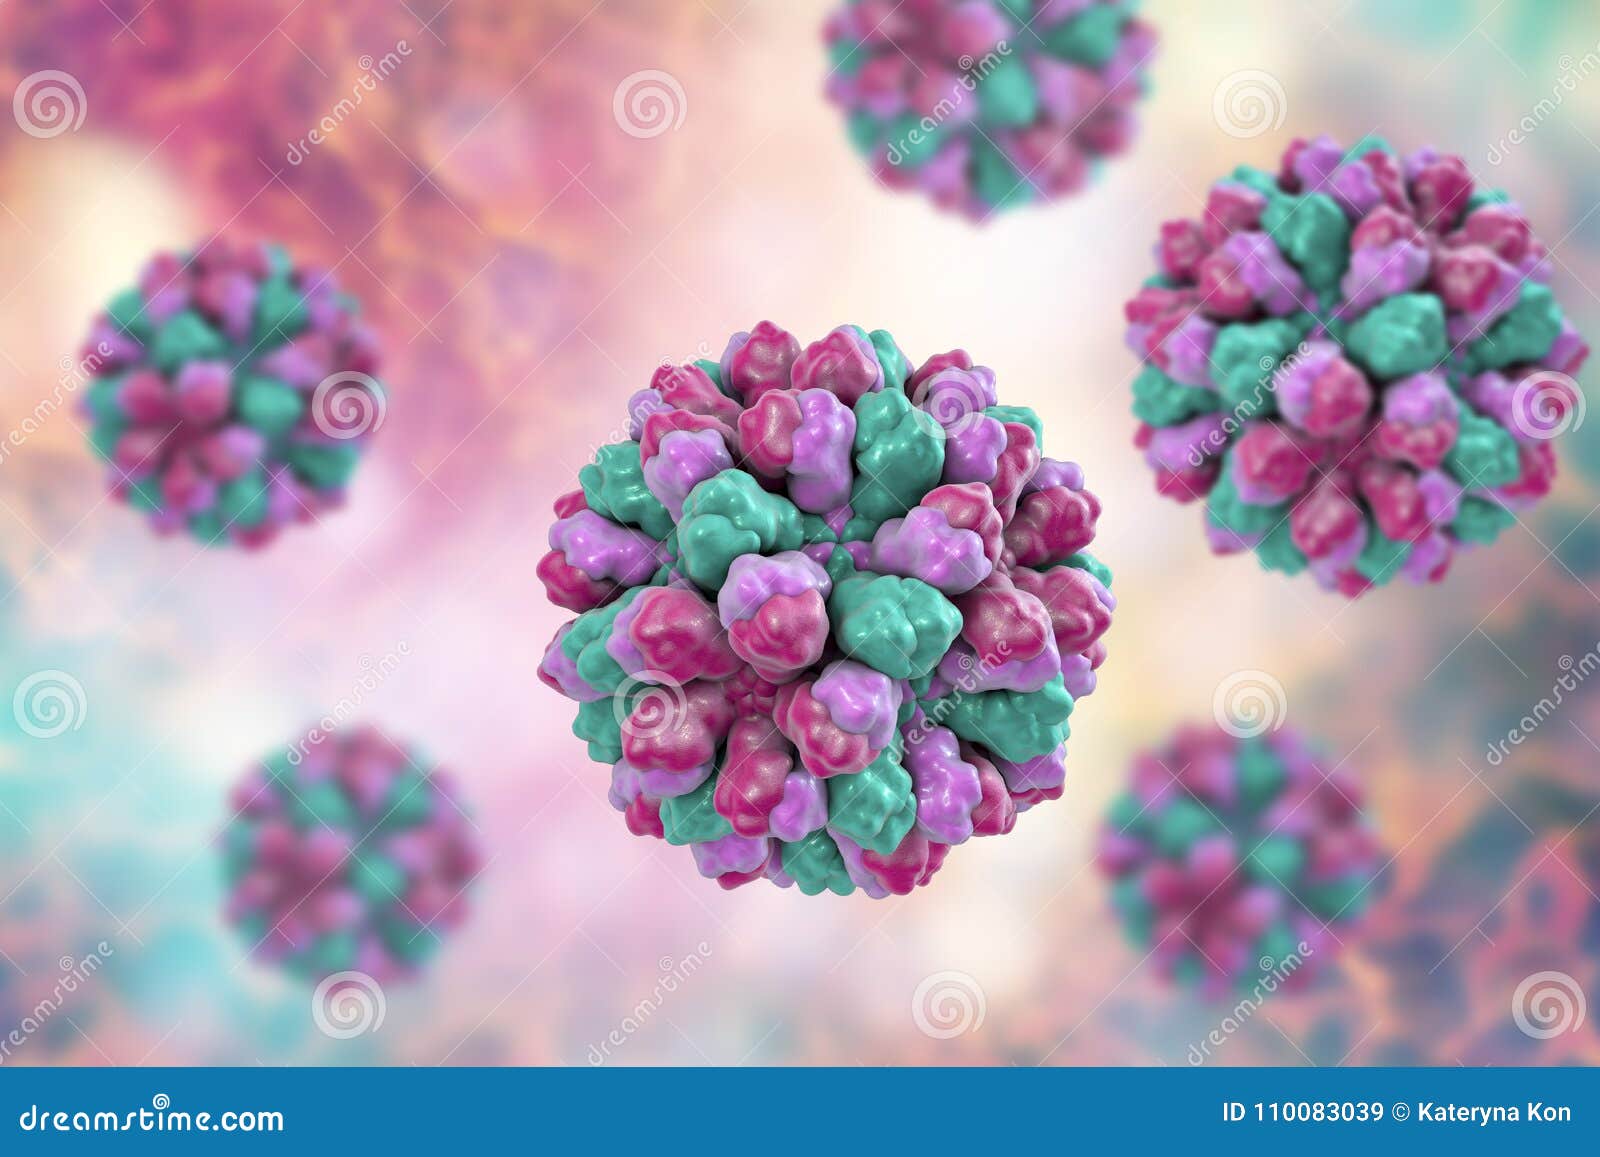 norovirus, norwalk, also known as winter vomiting bug, causative agent of gastroenteritis